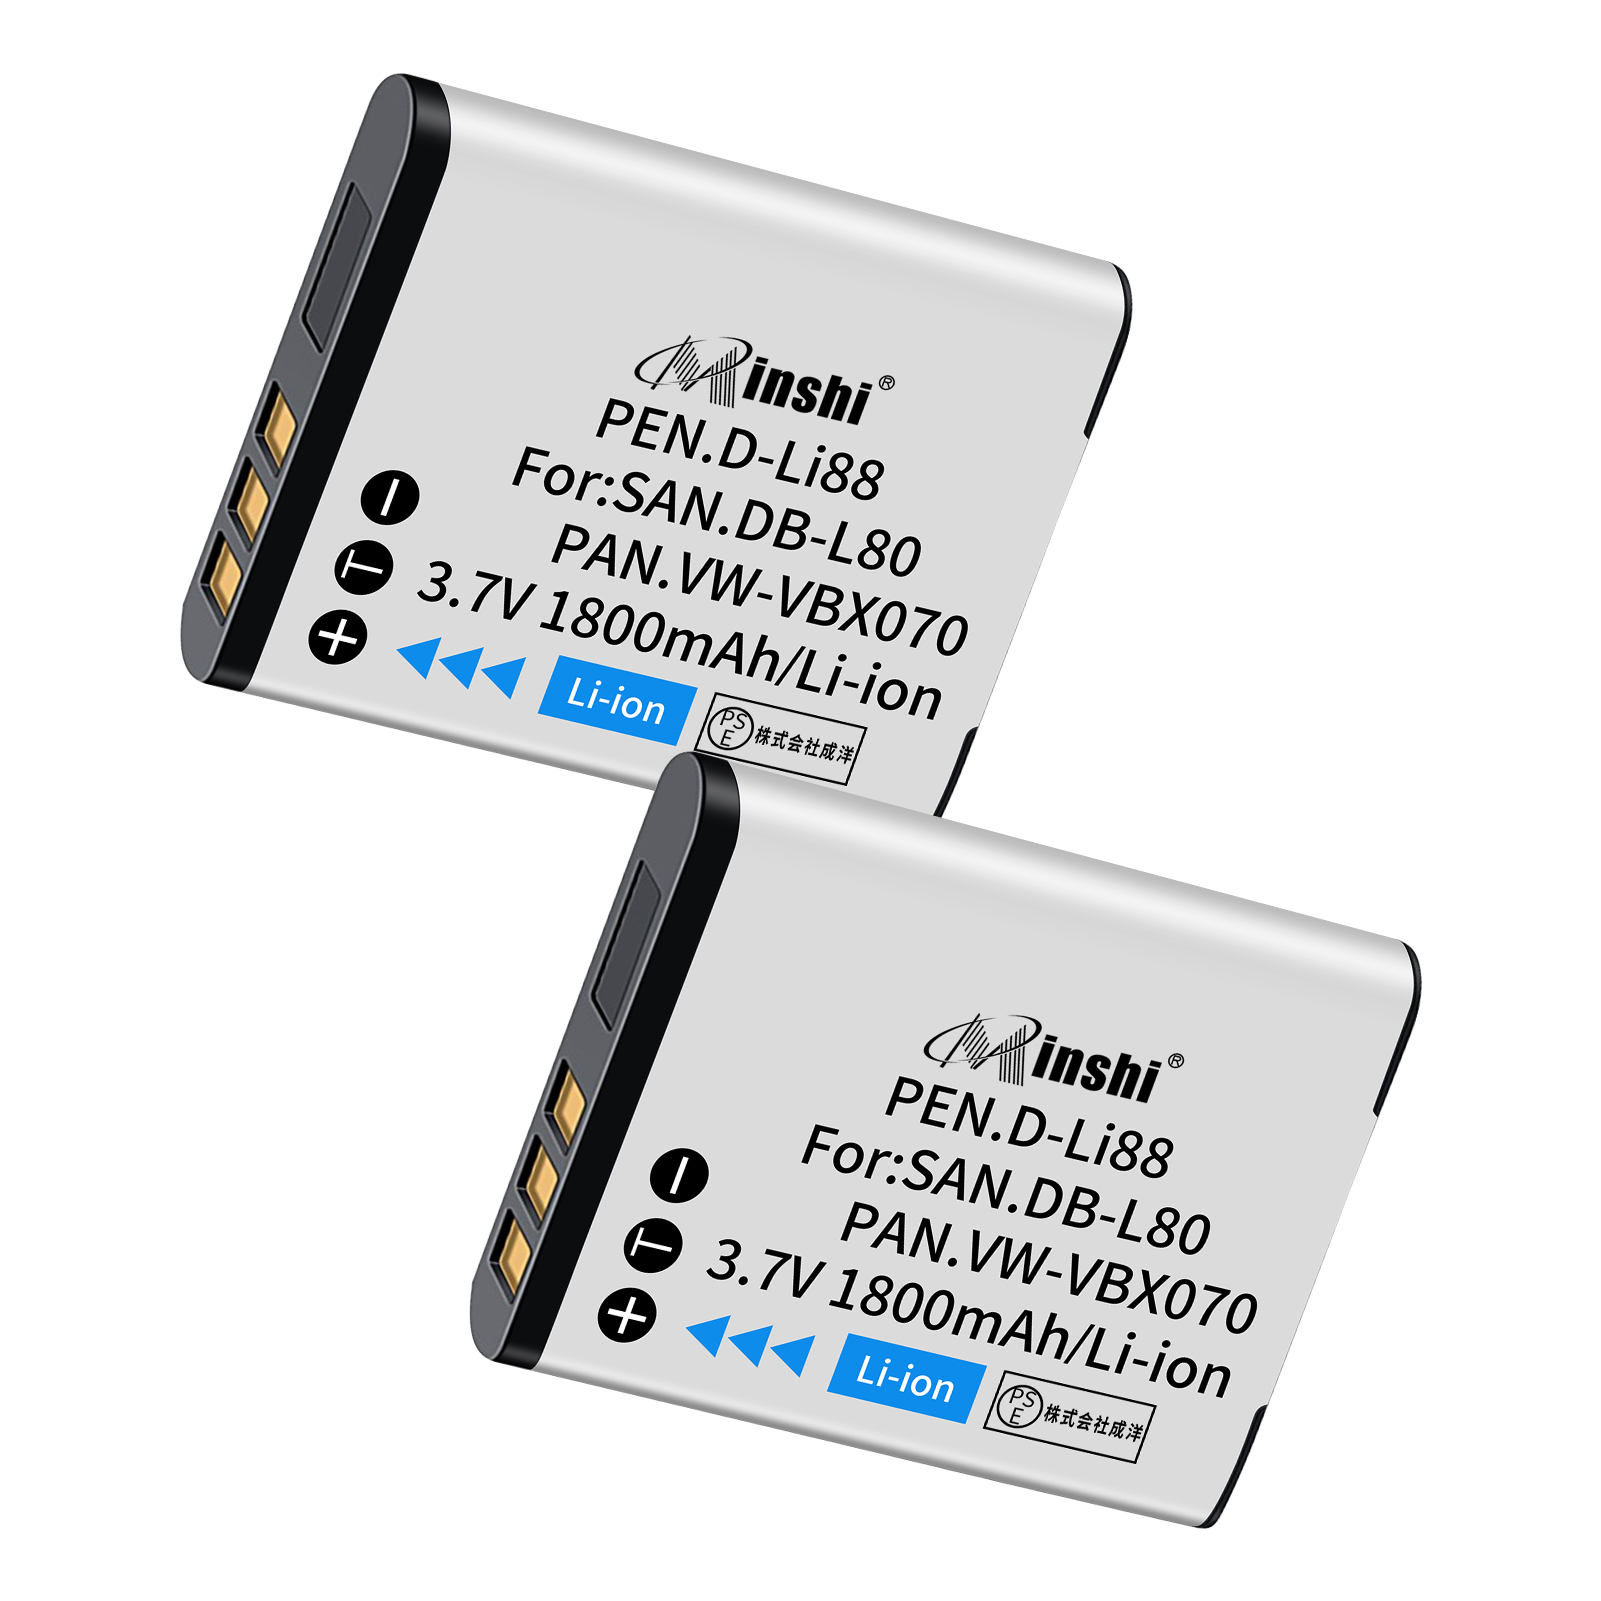 【２個セット】minshi HX-WA10EB-A【1800mAh 3.7V】PSE認定済 高品質 VW-VBX070互換バッテリーWHG